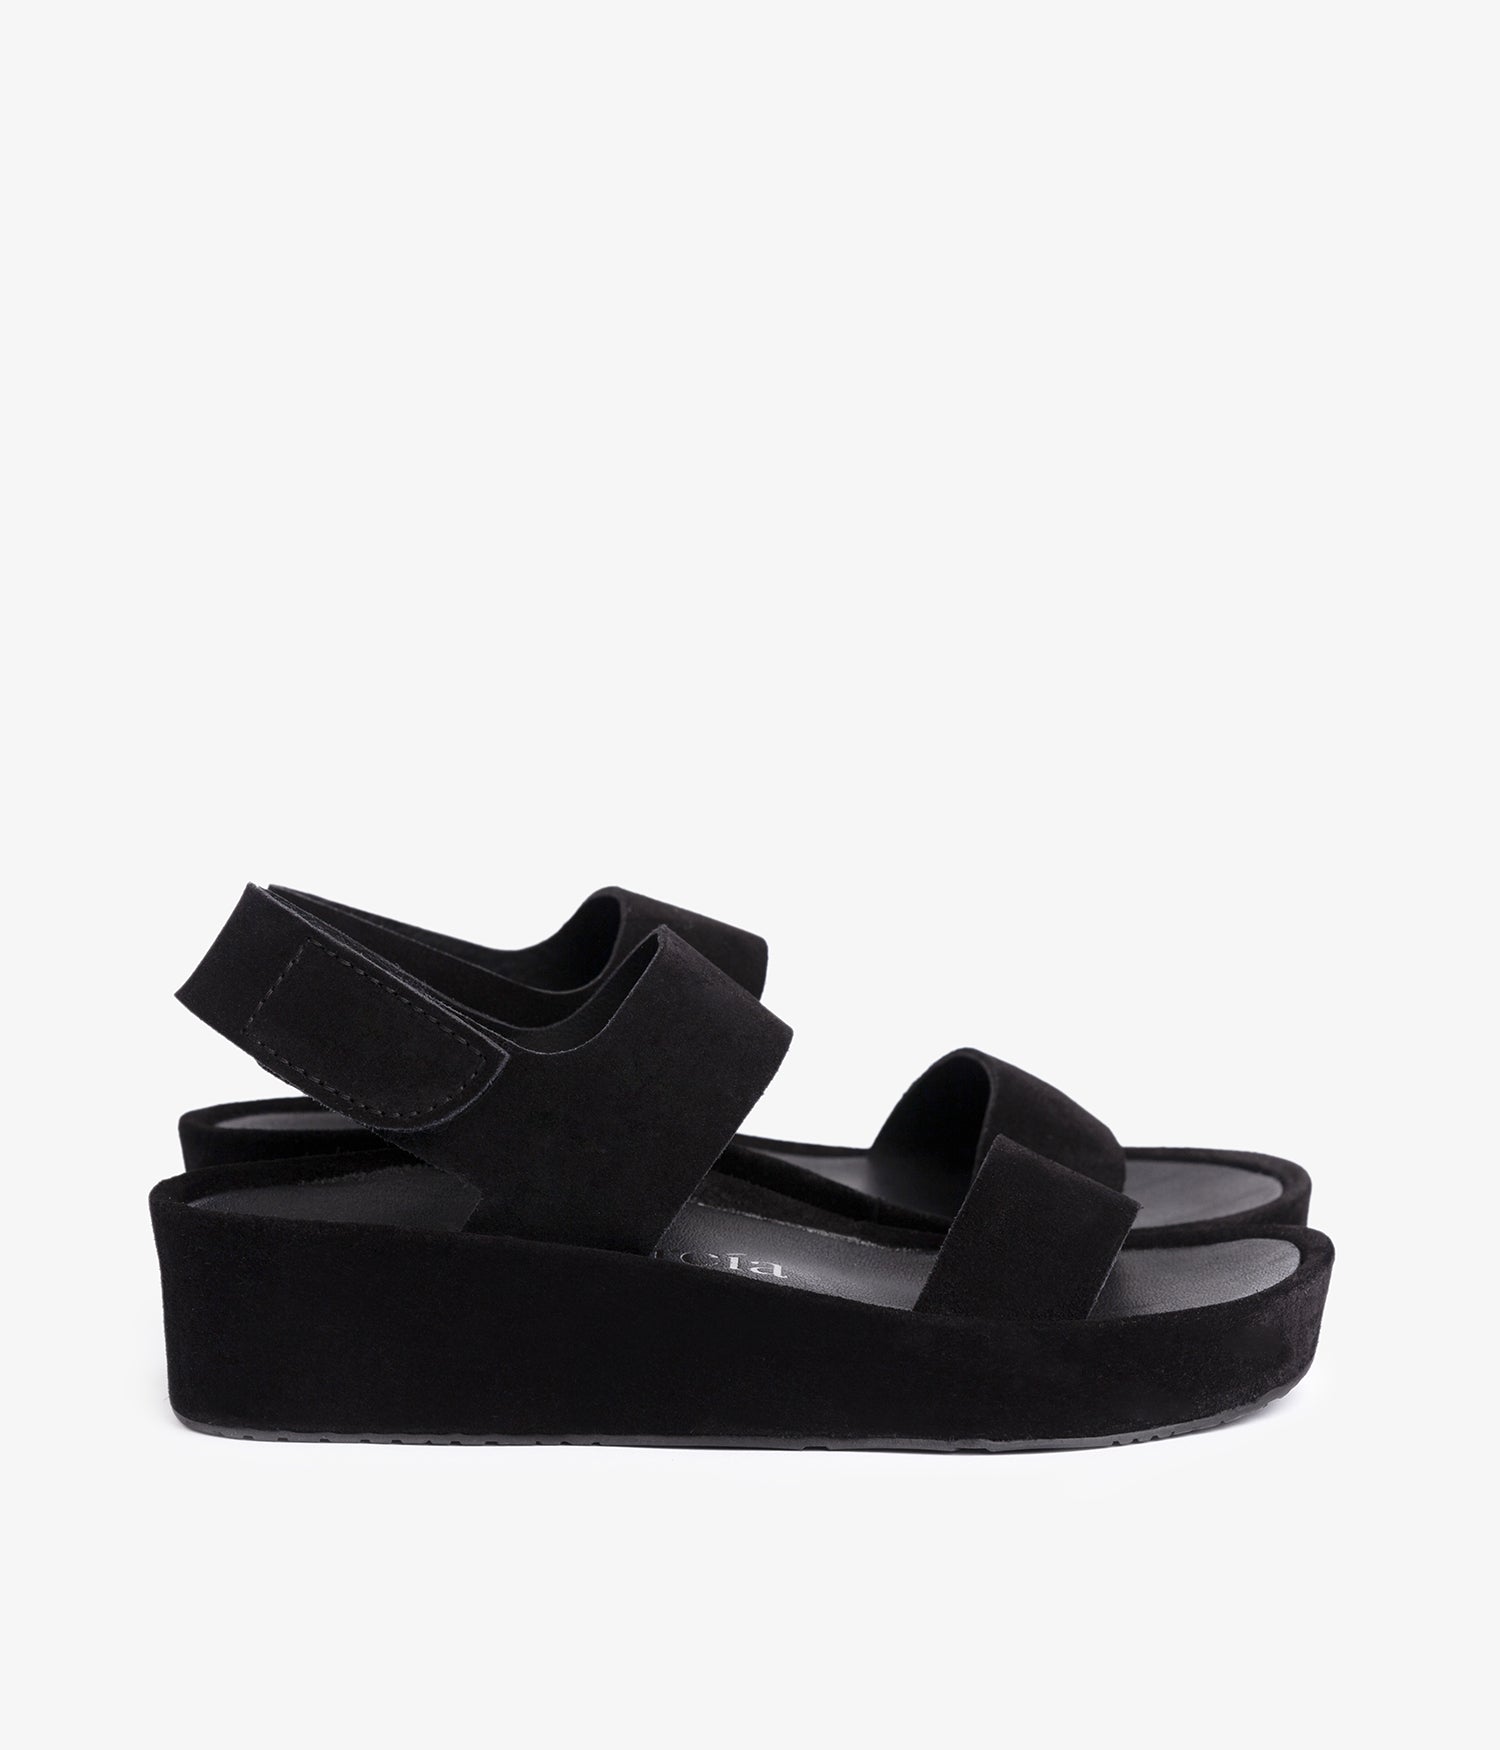 pedro garcia slide flatform sandal beige black lacey ess 2